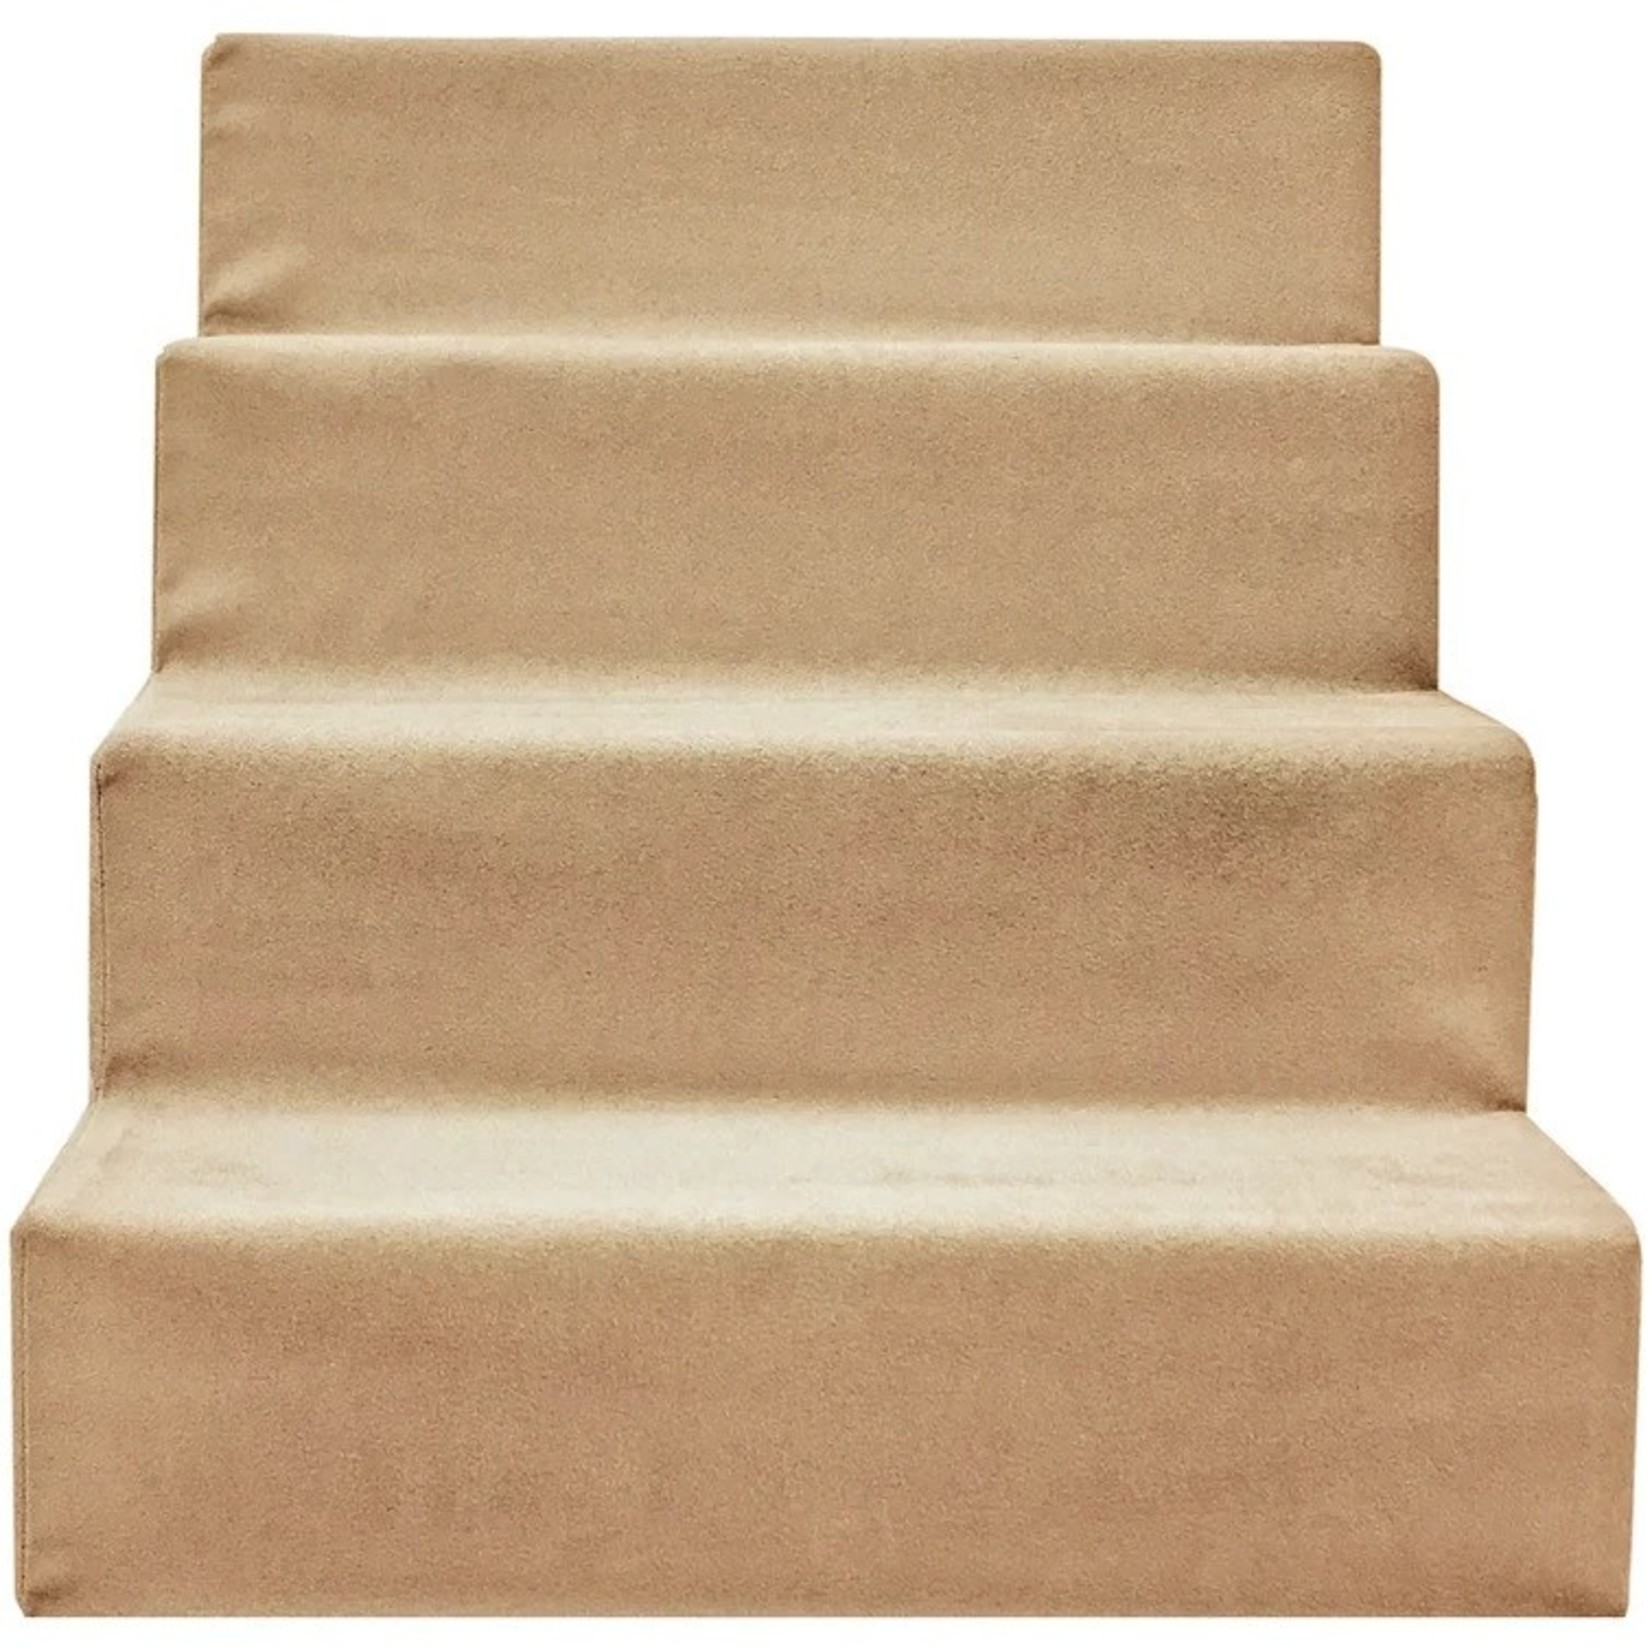 *Grommit High Density Foam 4 Step Pet Stairs - Beige